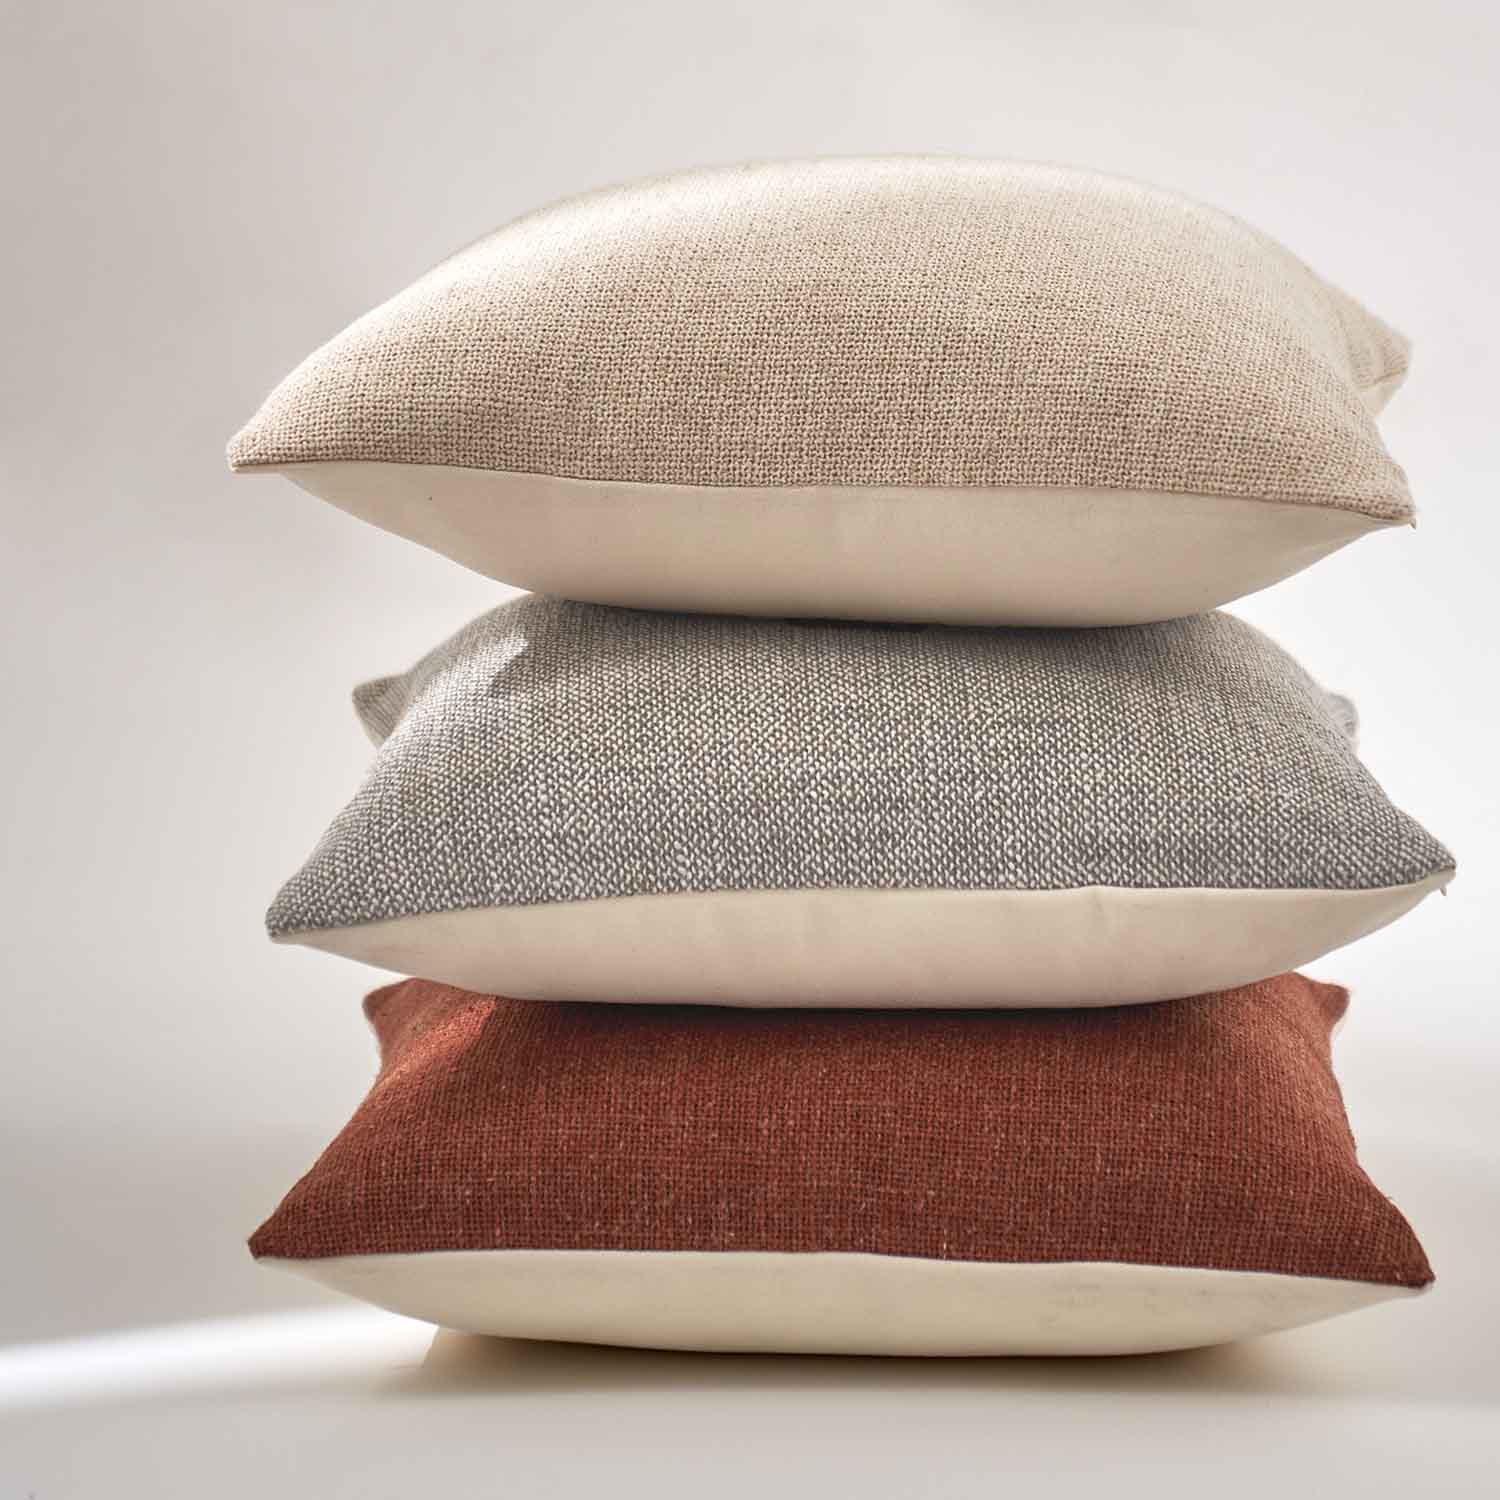 Savona Textured Linen Pillow Cover-20x20 linen pillow cover